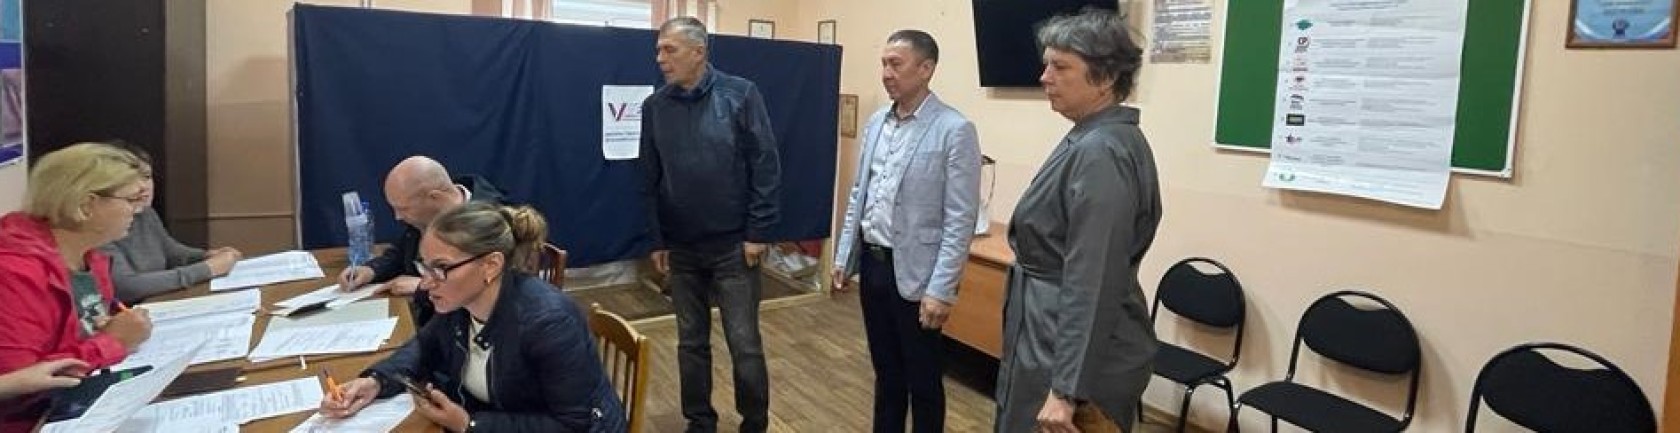 Члены общественной наблюдательной комиссии проконтролировали ход голосования в ИЦ ИК-27